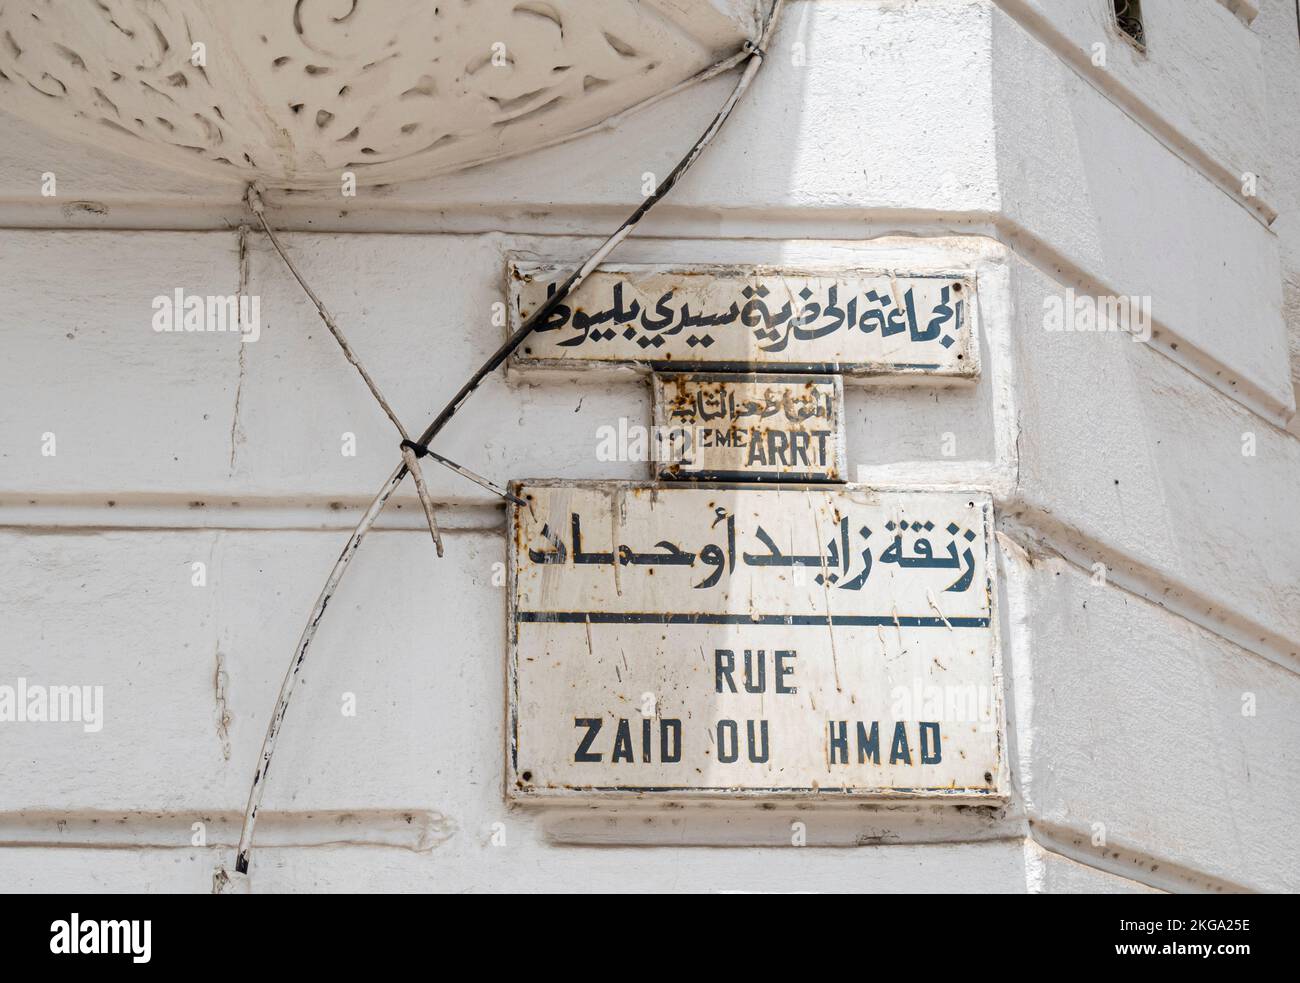 Rue Zaid ou Hmad en arabe et français. Casablanca, Maroc Banque D'Images